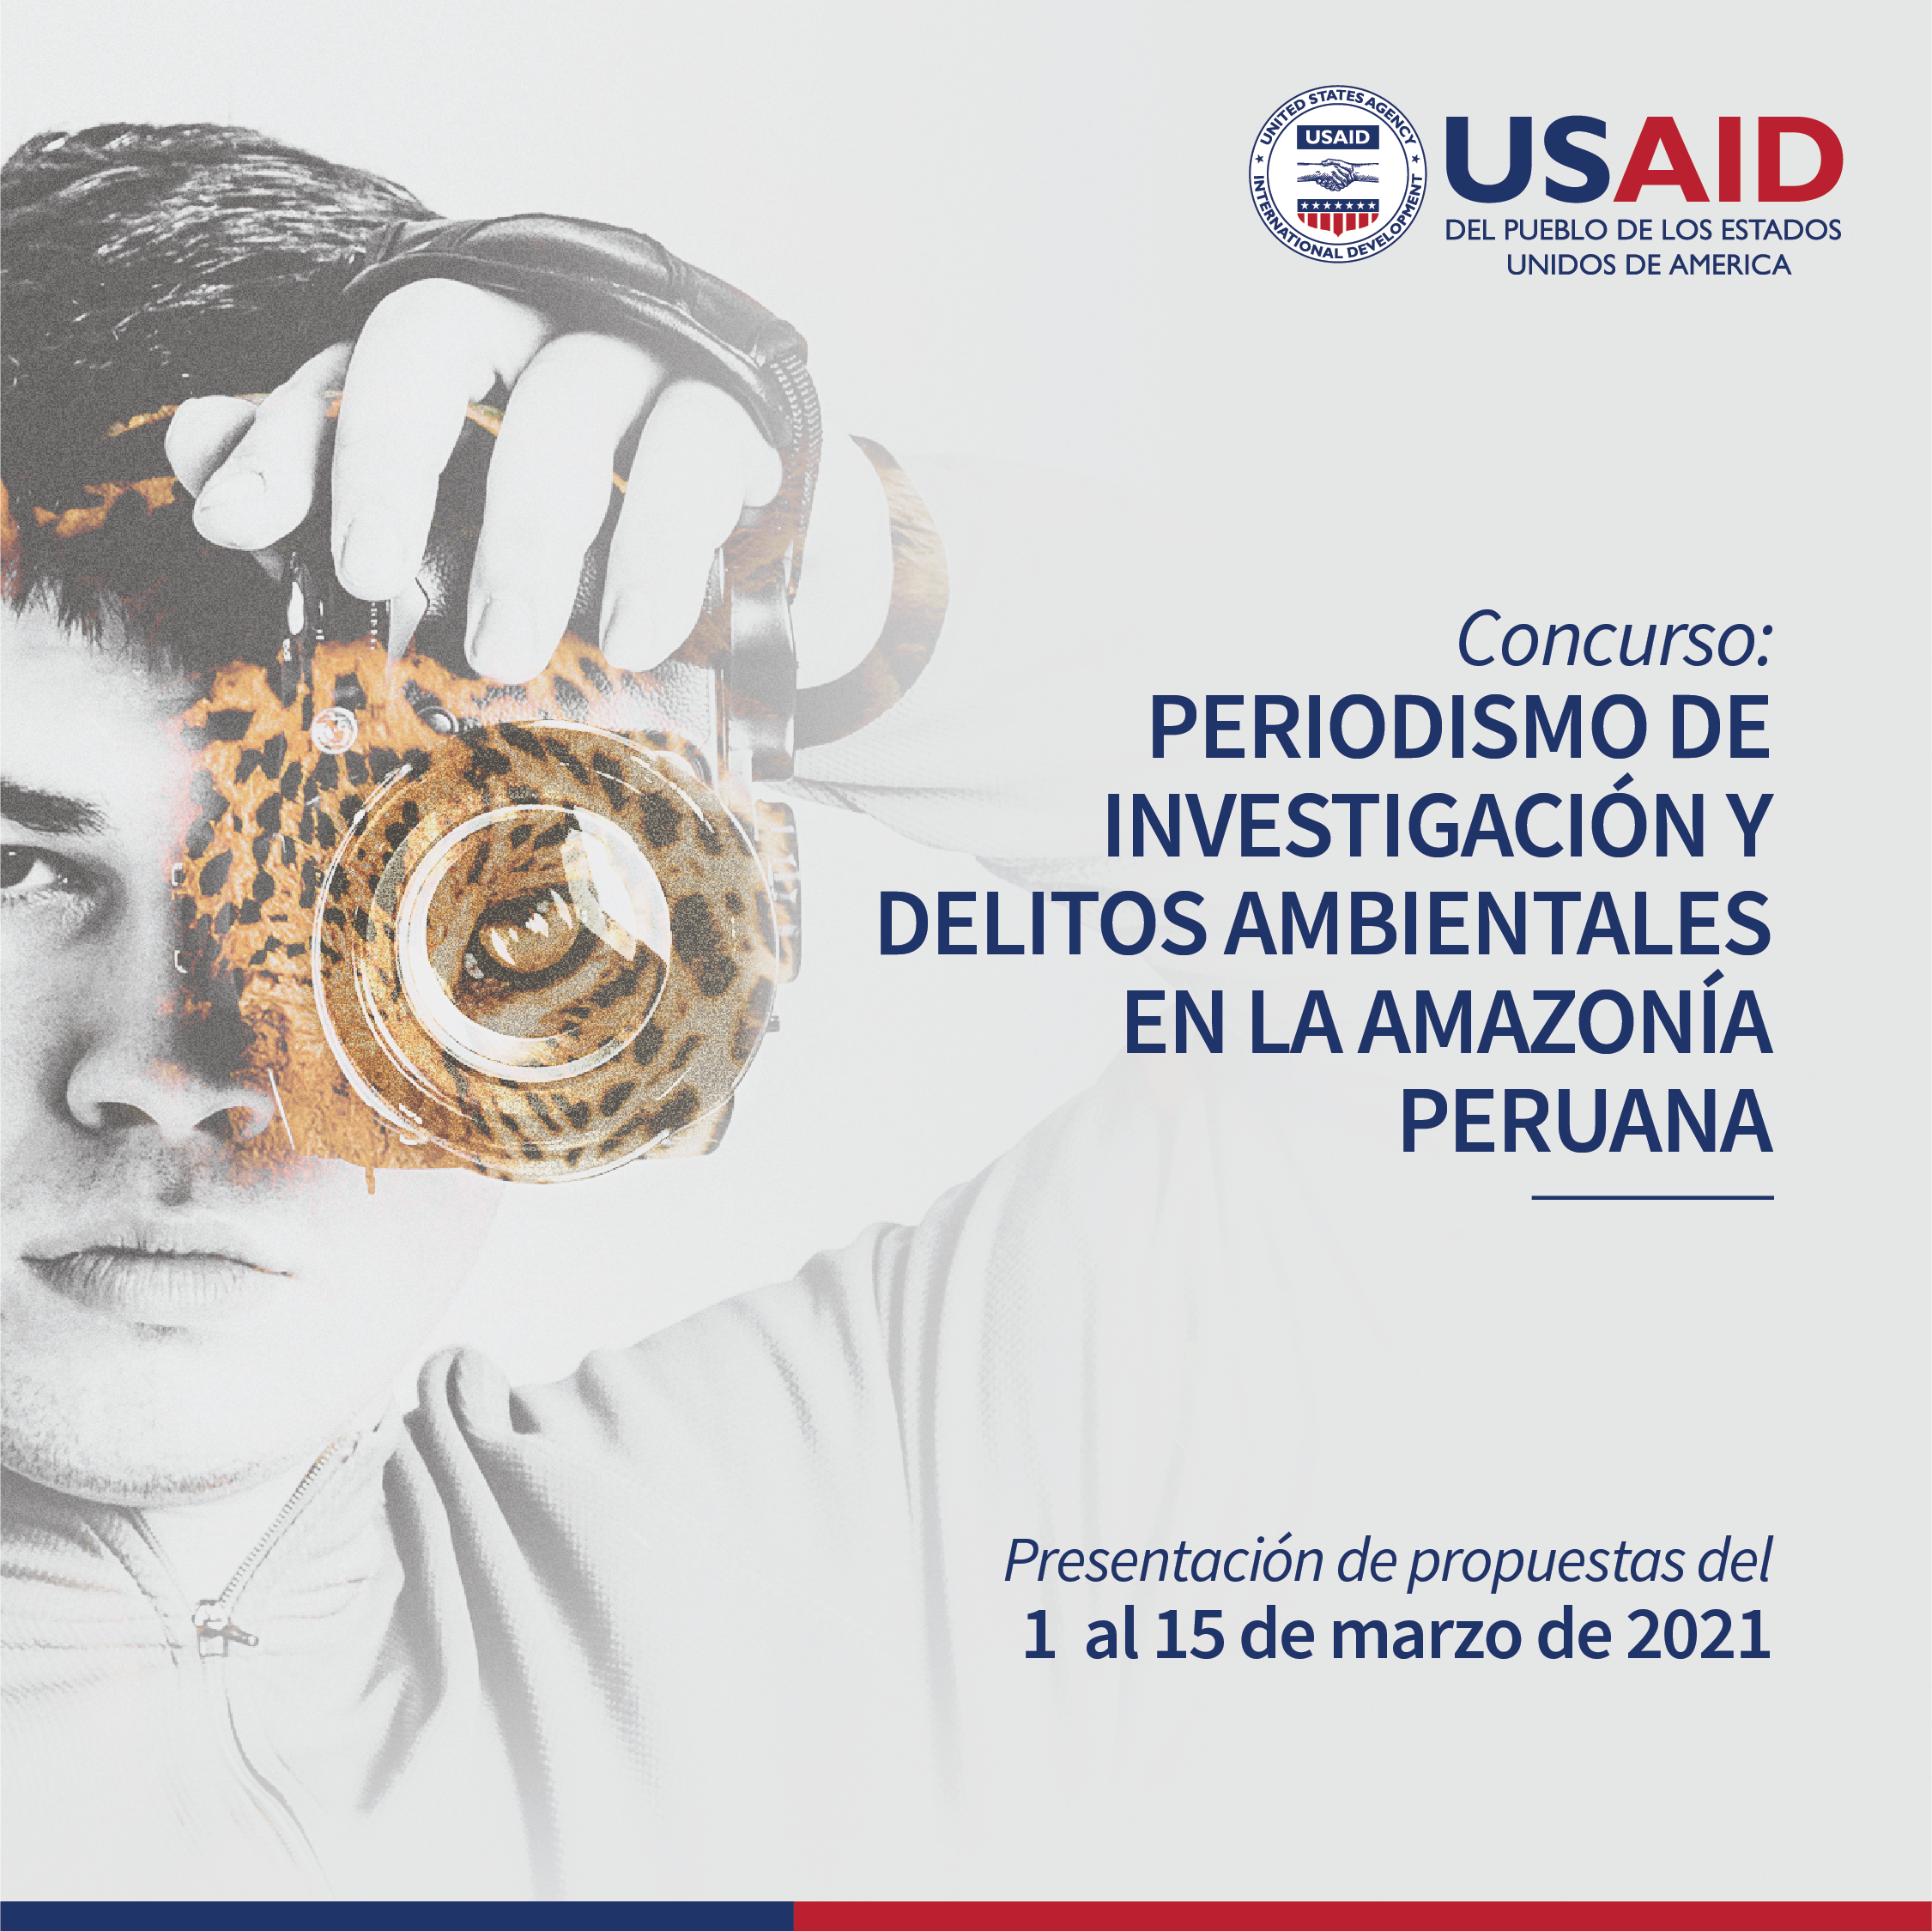 PROYECTO PREVENIR DE USAID – CONCURSO: PERIODISMO DE INVESTIGACIÓN Y DELITOS AMBIENTALES EN LA AMAZONÍA PERUANA